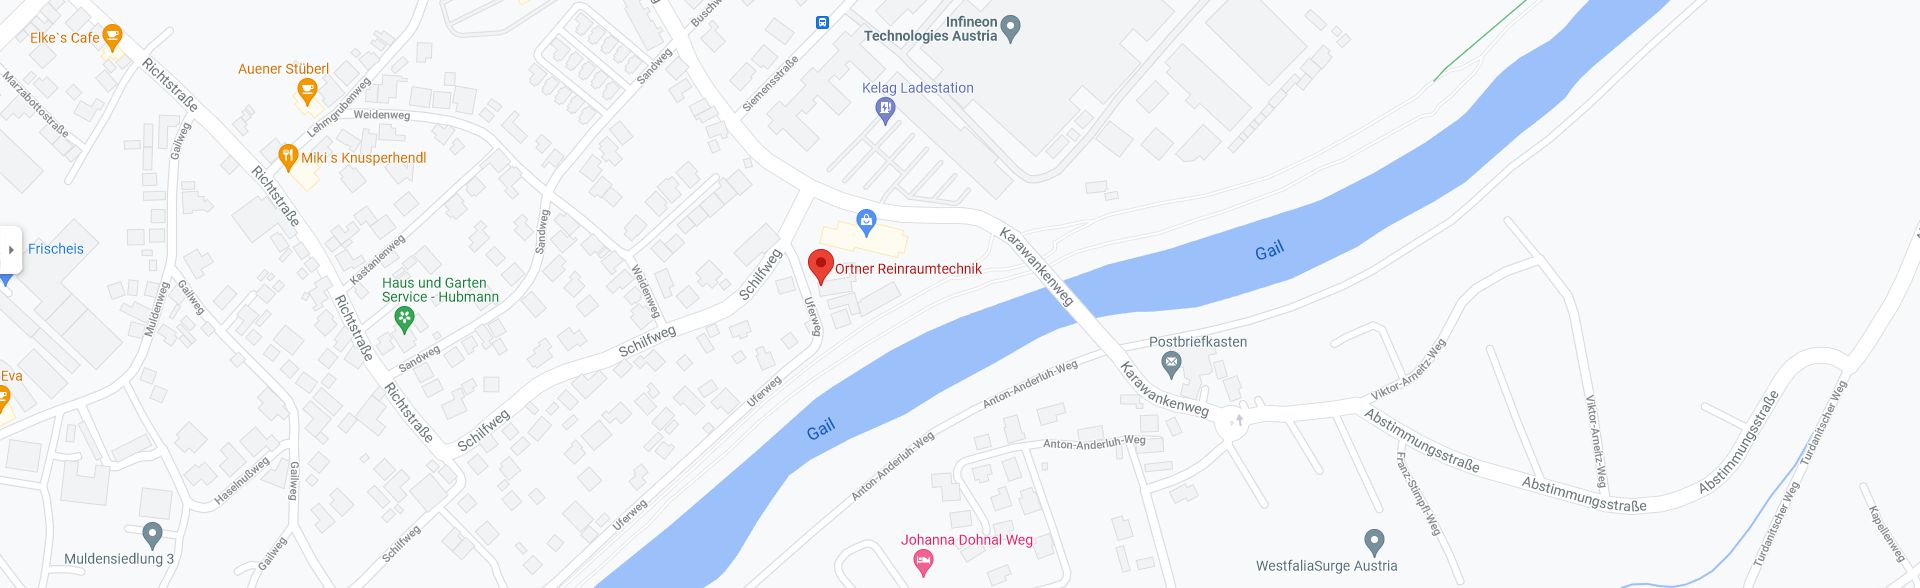 Google Maps - Ortner Reinraumtechnik GmbH